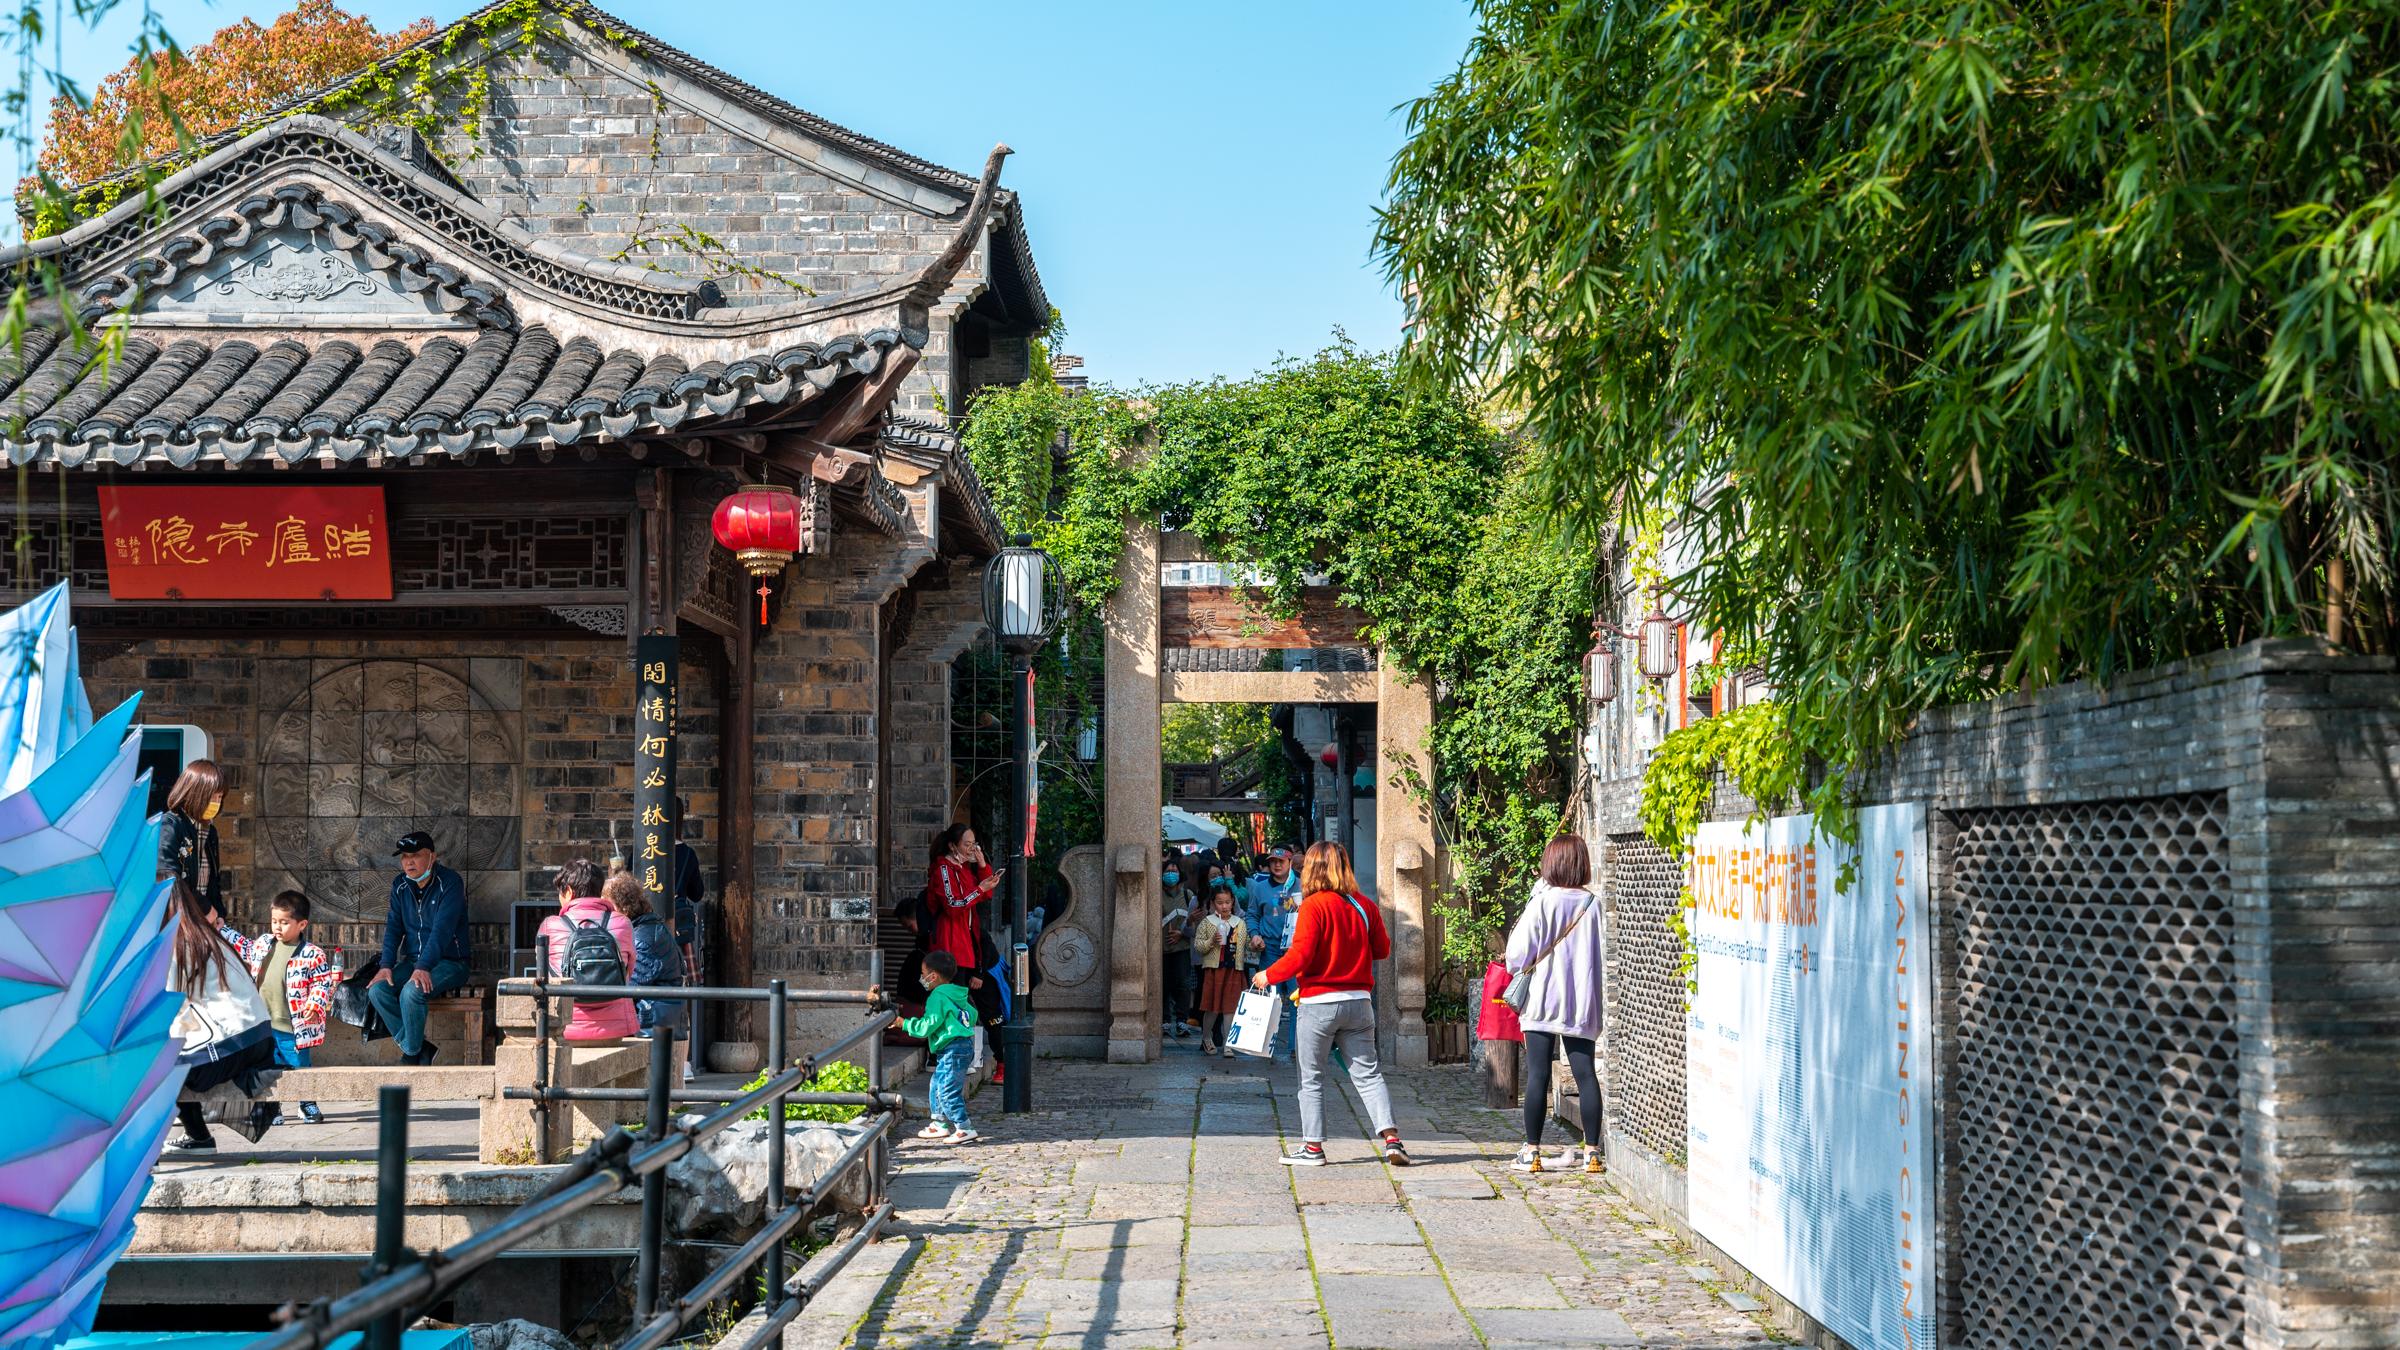 南京|南京旅游并不止夫子庙，老门东更值得一去，再现了南京老城南风貌